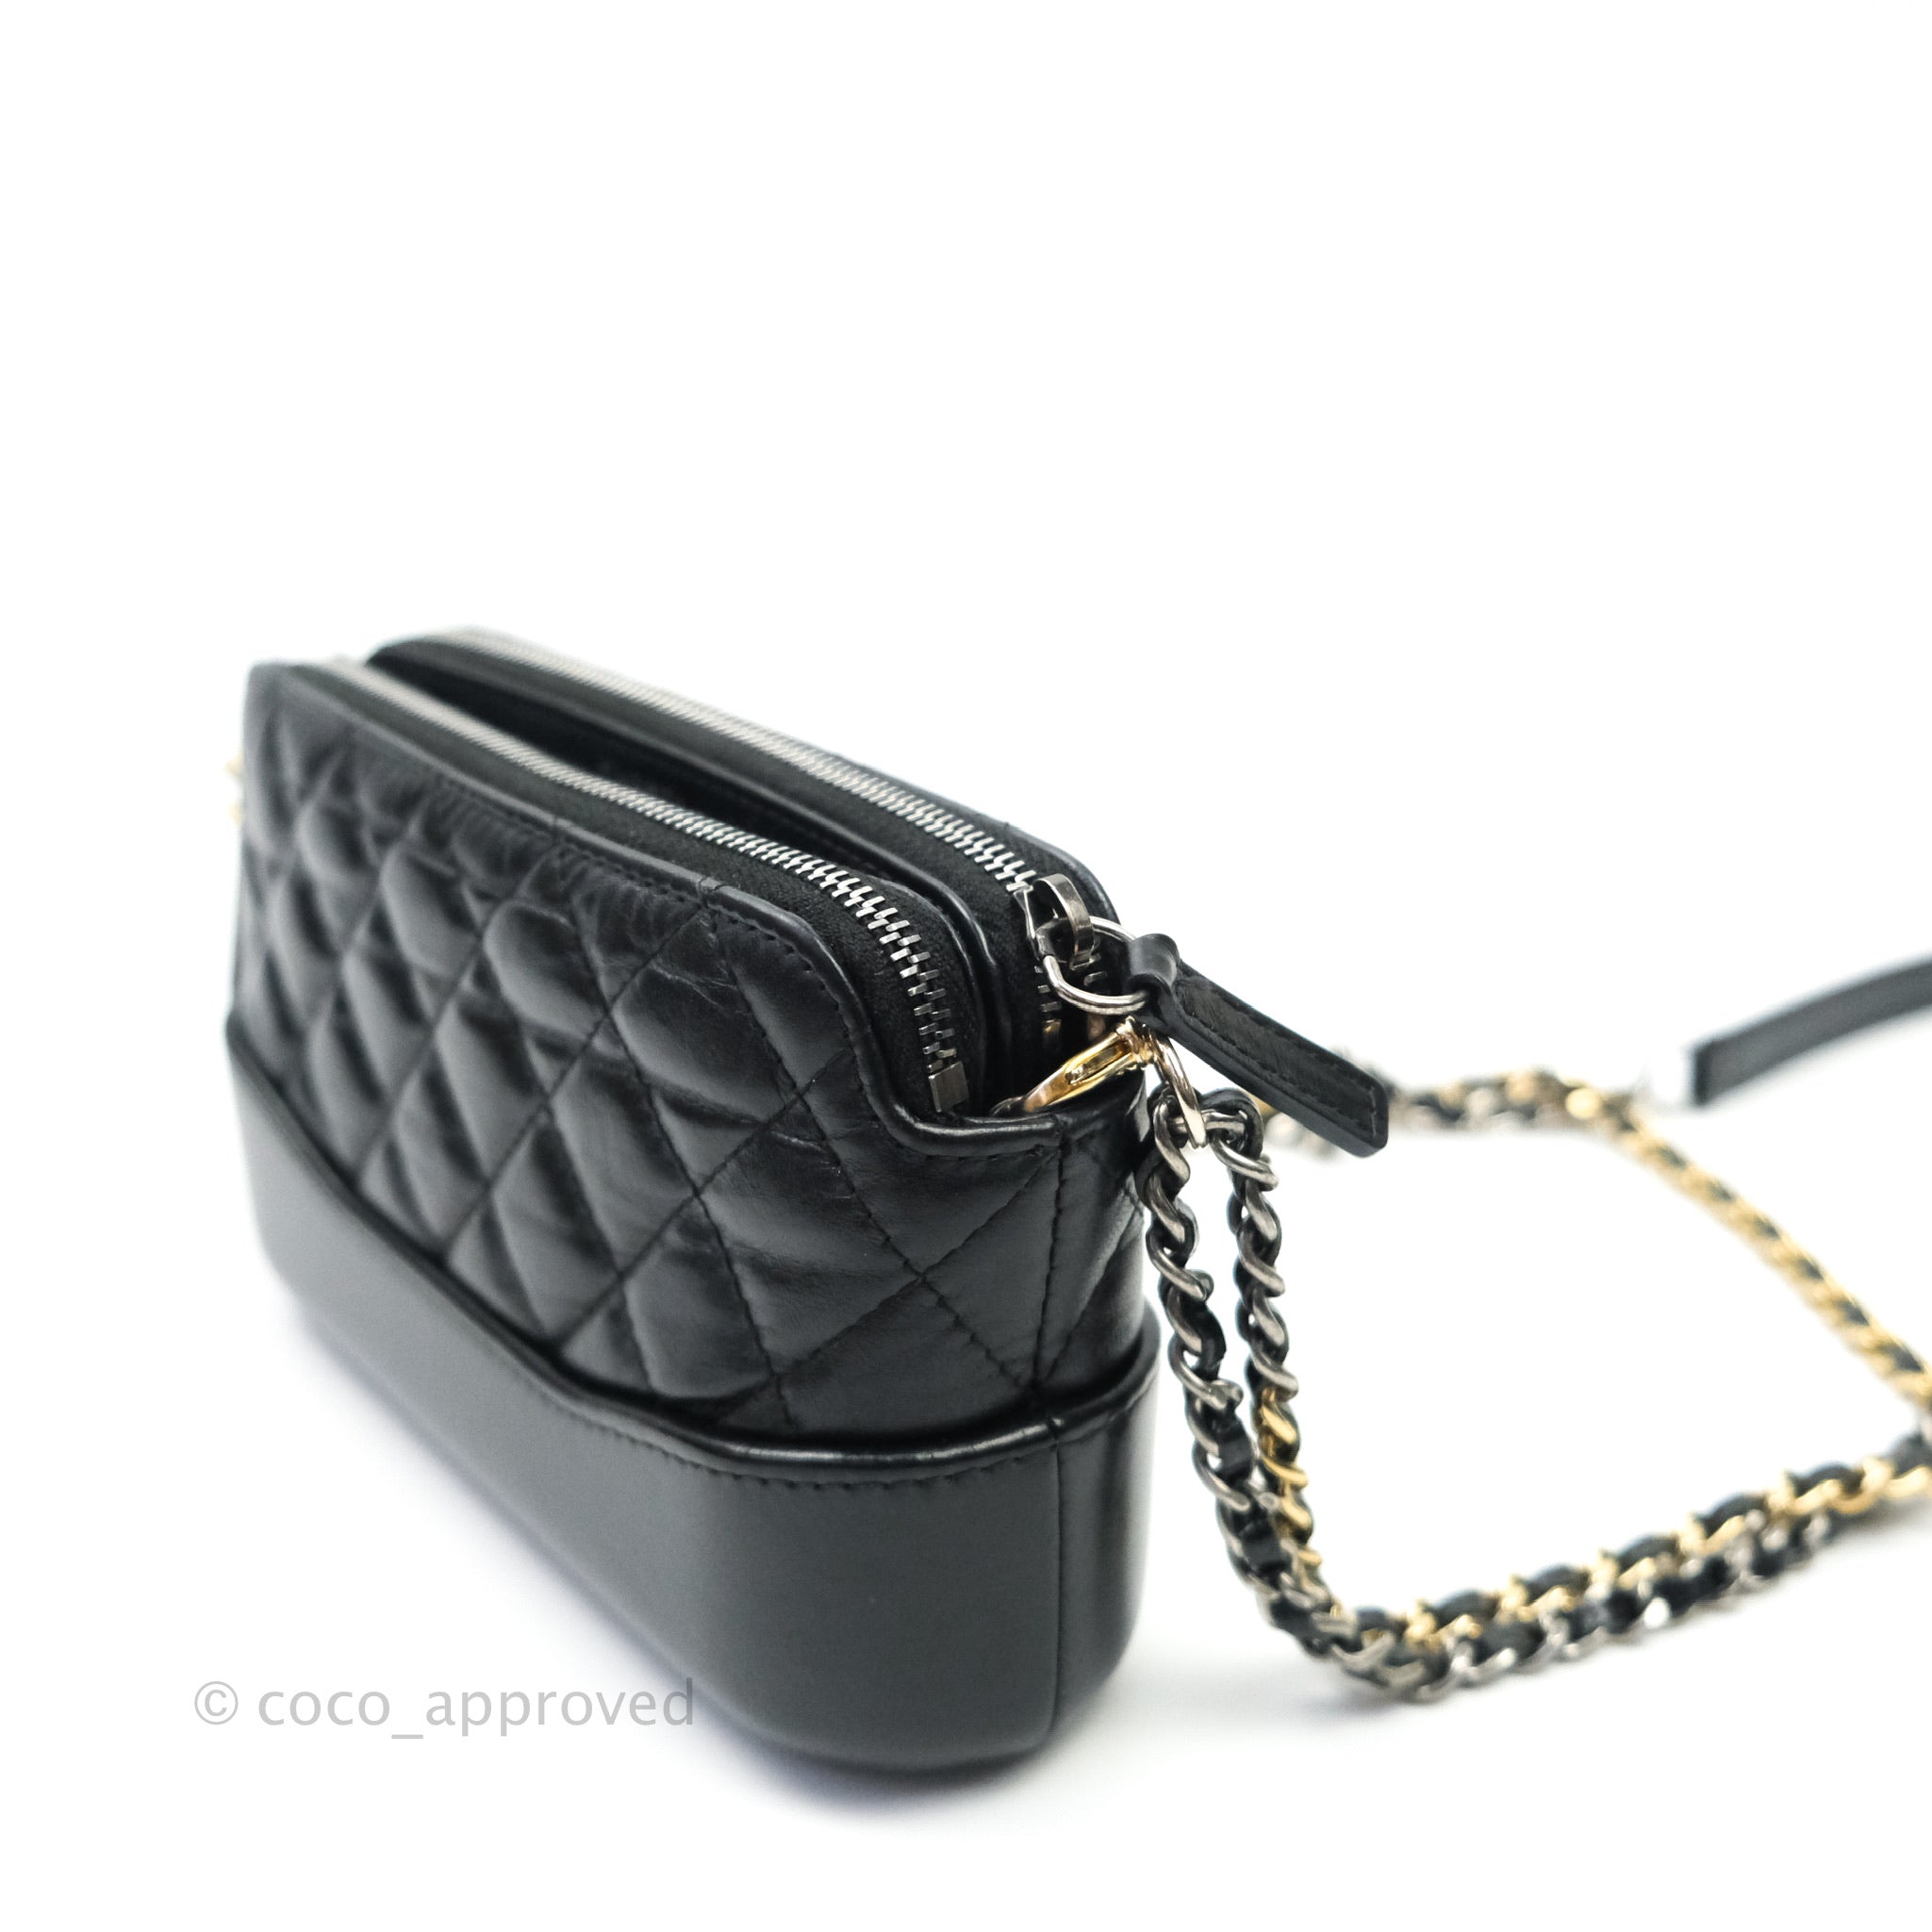 Chanel 2018 Gabrielle Clutch w/ Chain - Black Clutches, Handbags -  CHA263284